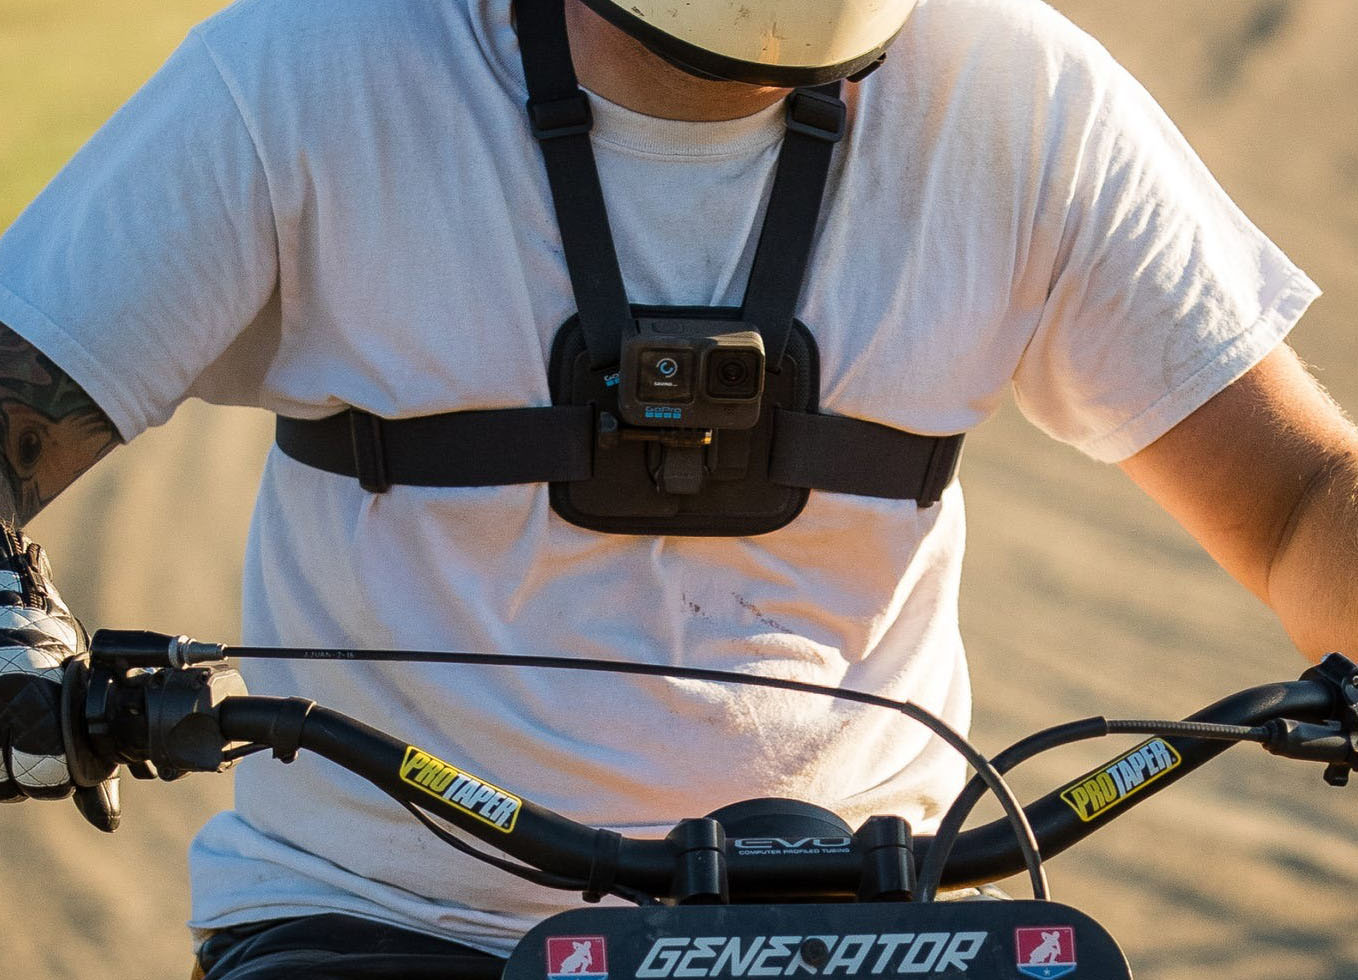 Thiết kế GoPro Chesty đơn giản giúp cố định camera trên ngực